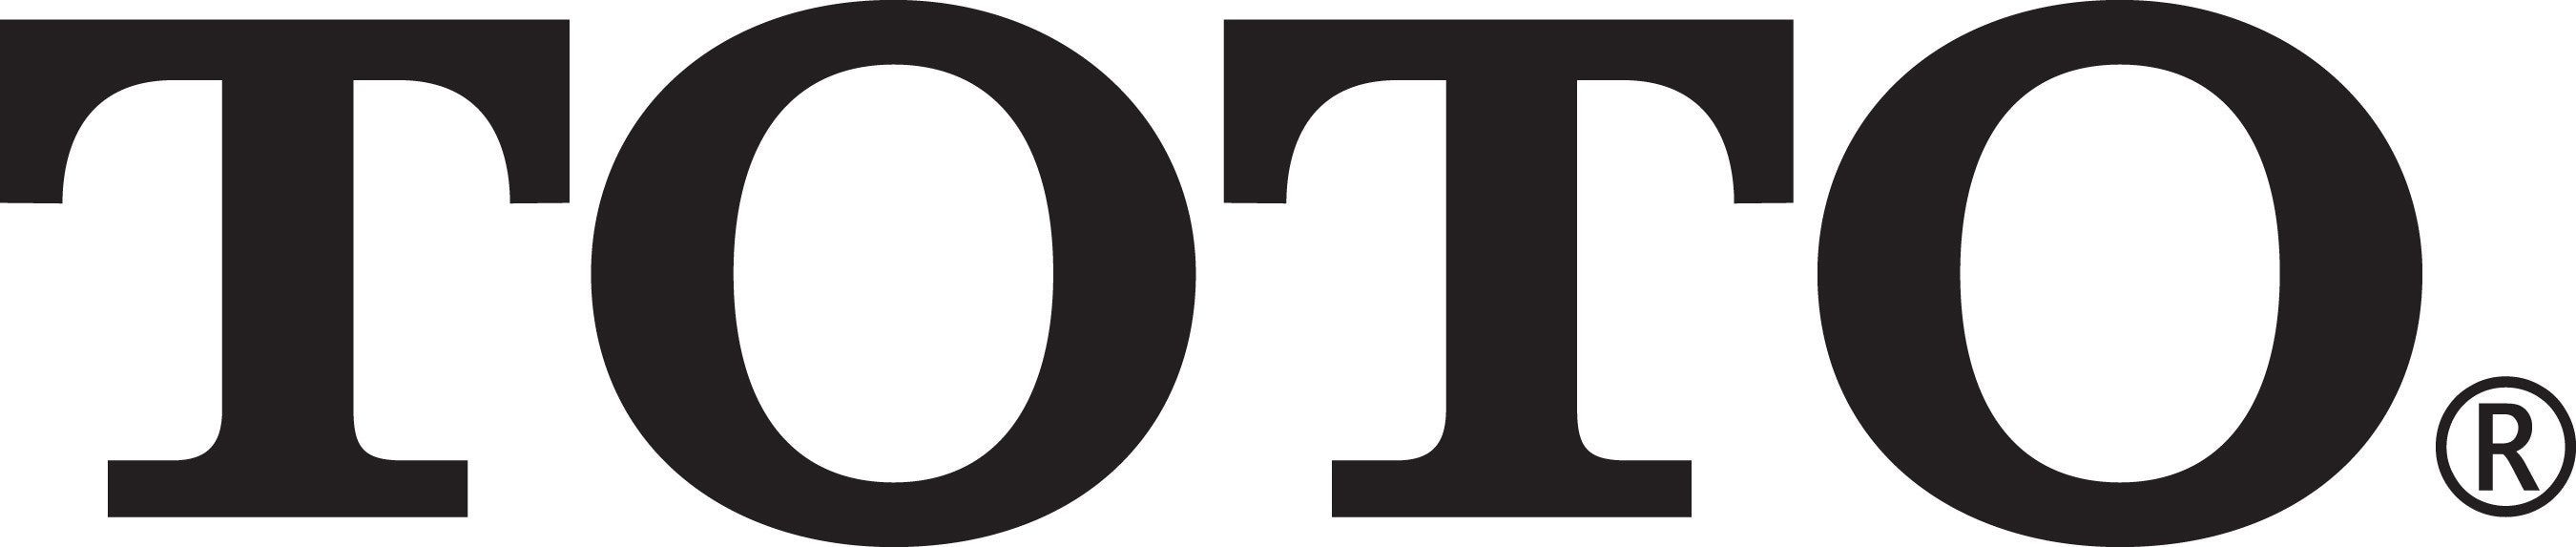 toto-logo-large.jpg